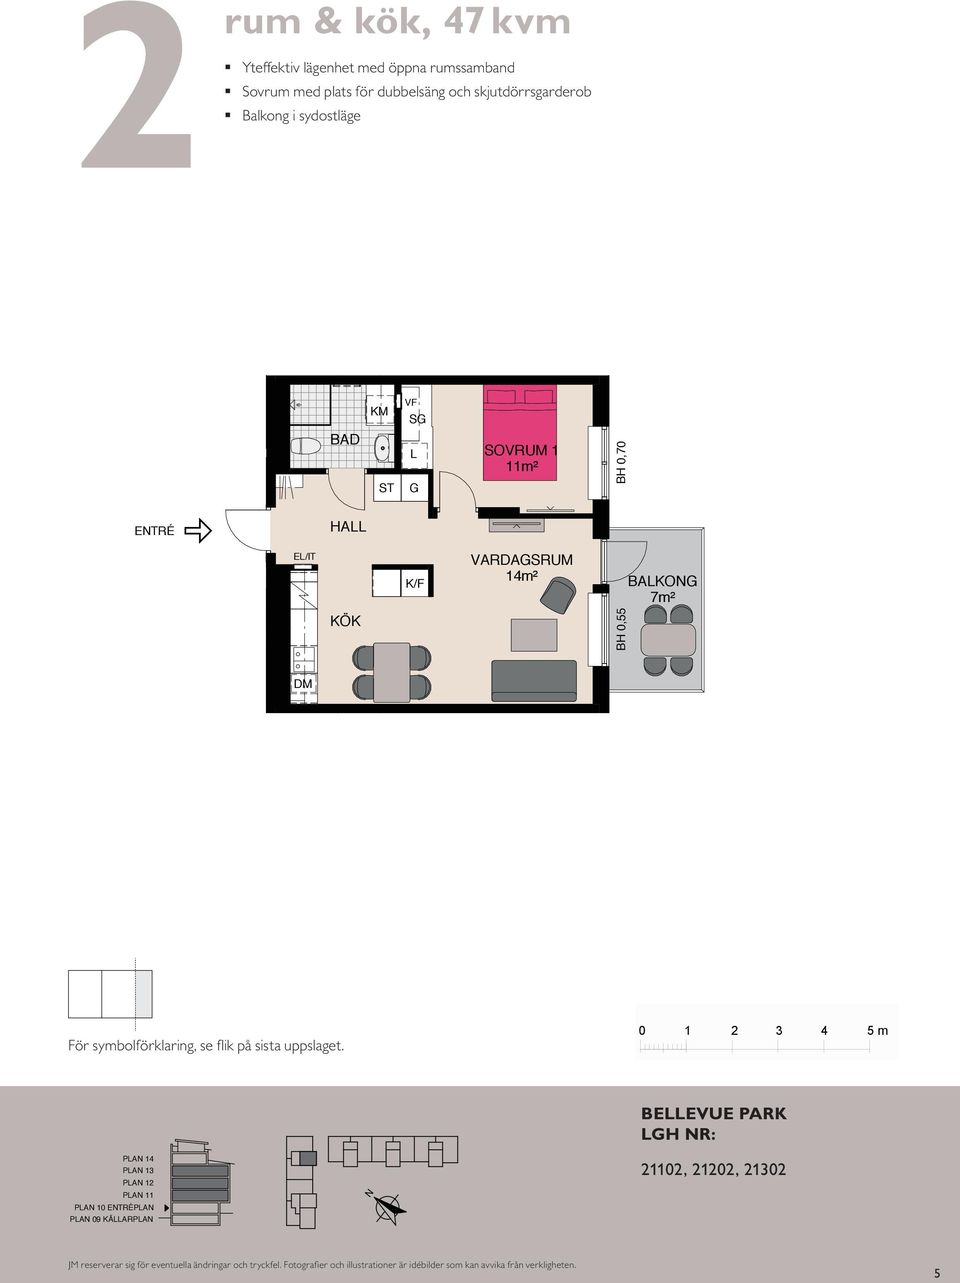 öppna rumssammanband Kompakt lägenhet med öppna rumssamband Sovrum med plats för två Balkong mot gård ETRÉ ETRÉ BAKOG 8 BH 0,55 m HA VF G HA K/F 4 K/F VF SOVRUM SOVRUM m² m² G m 4m² K/F 4m² BAKOG